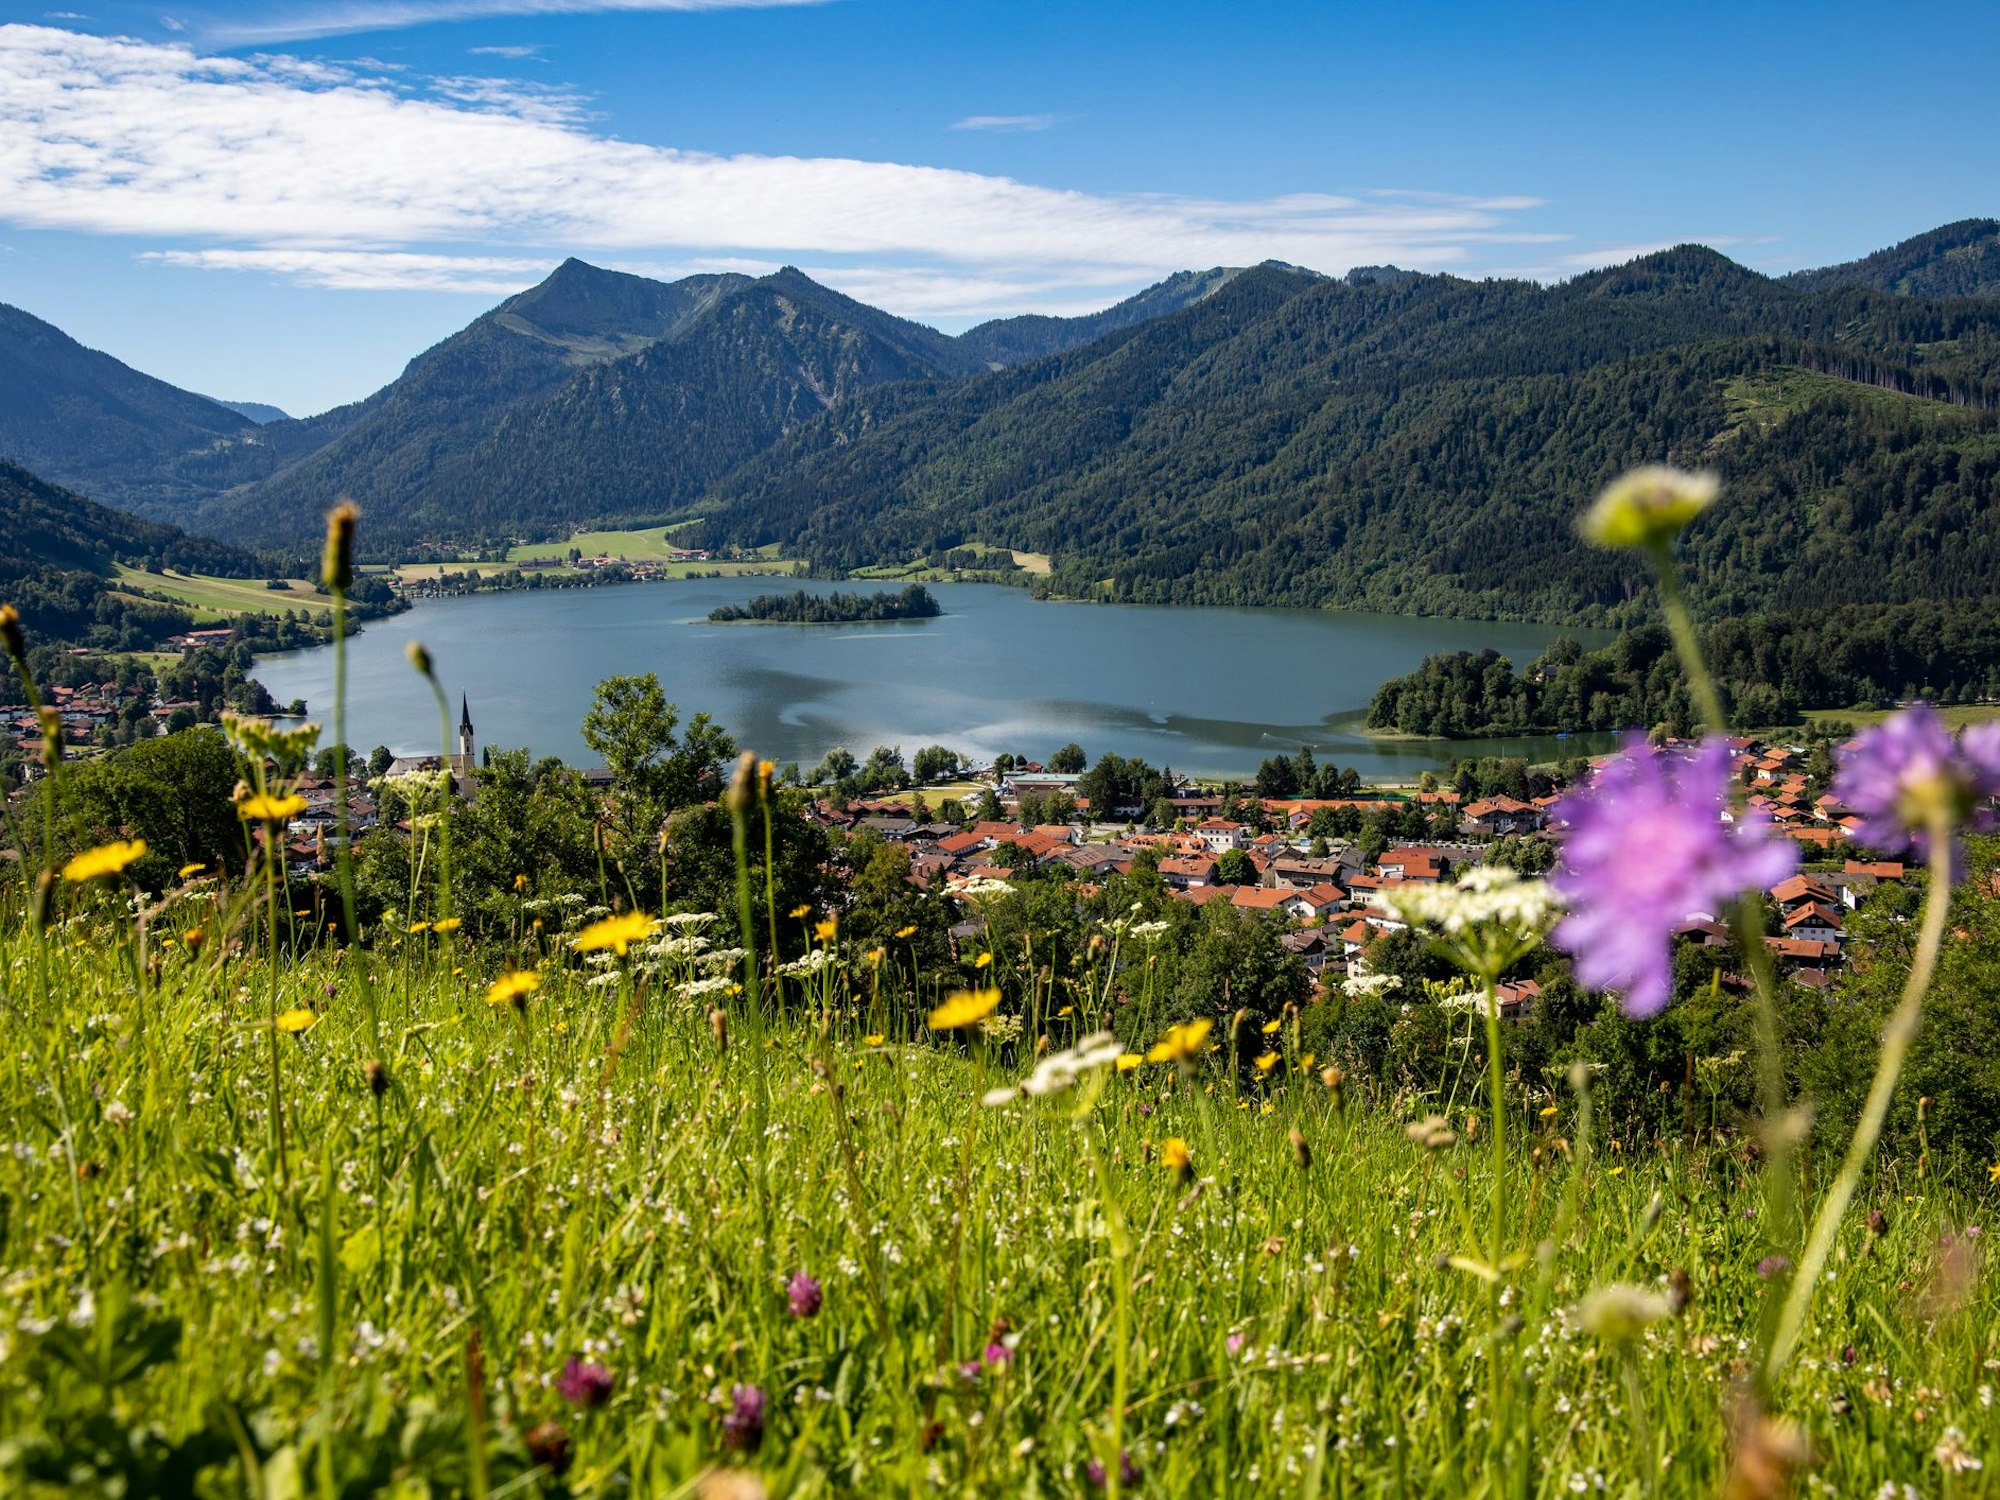 Auch der Schliersee ist aufgrund des Bergpanoramas ein schöner See in Bayern.